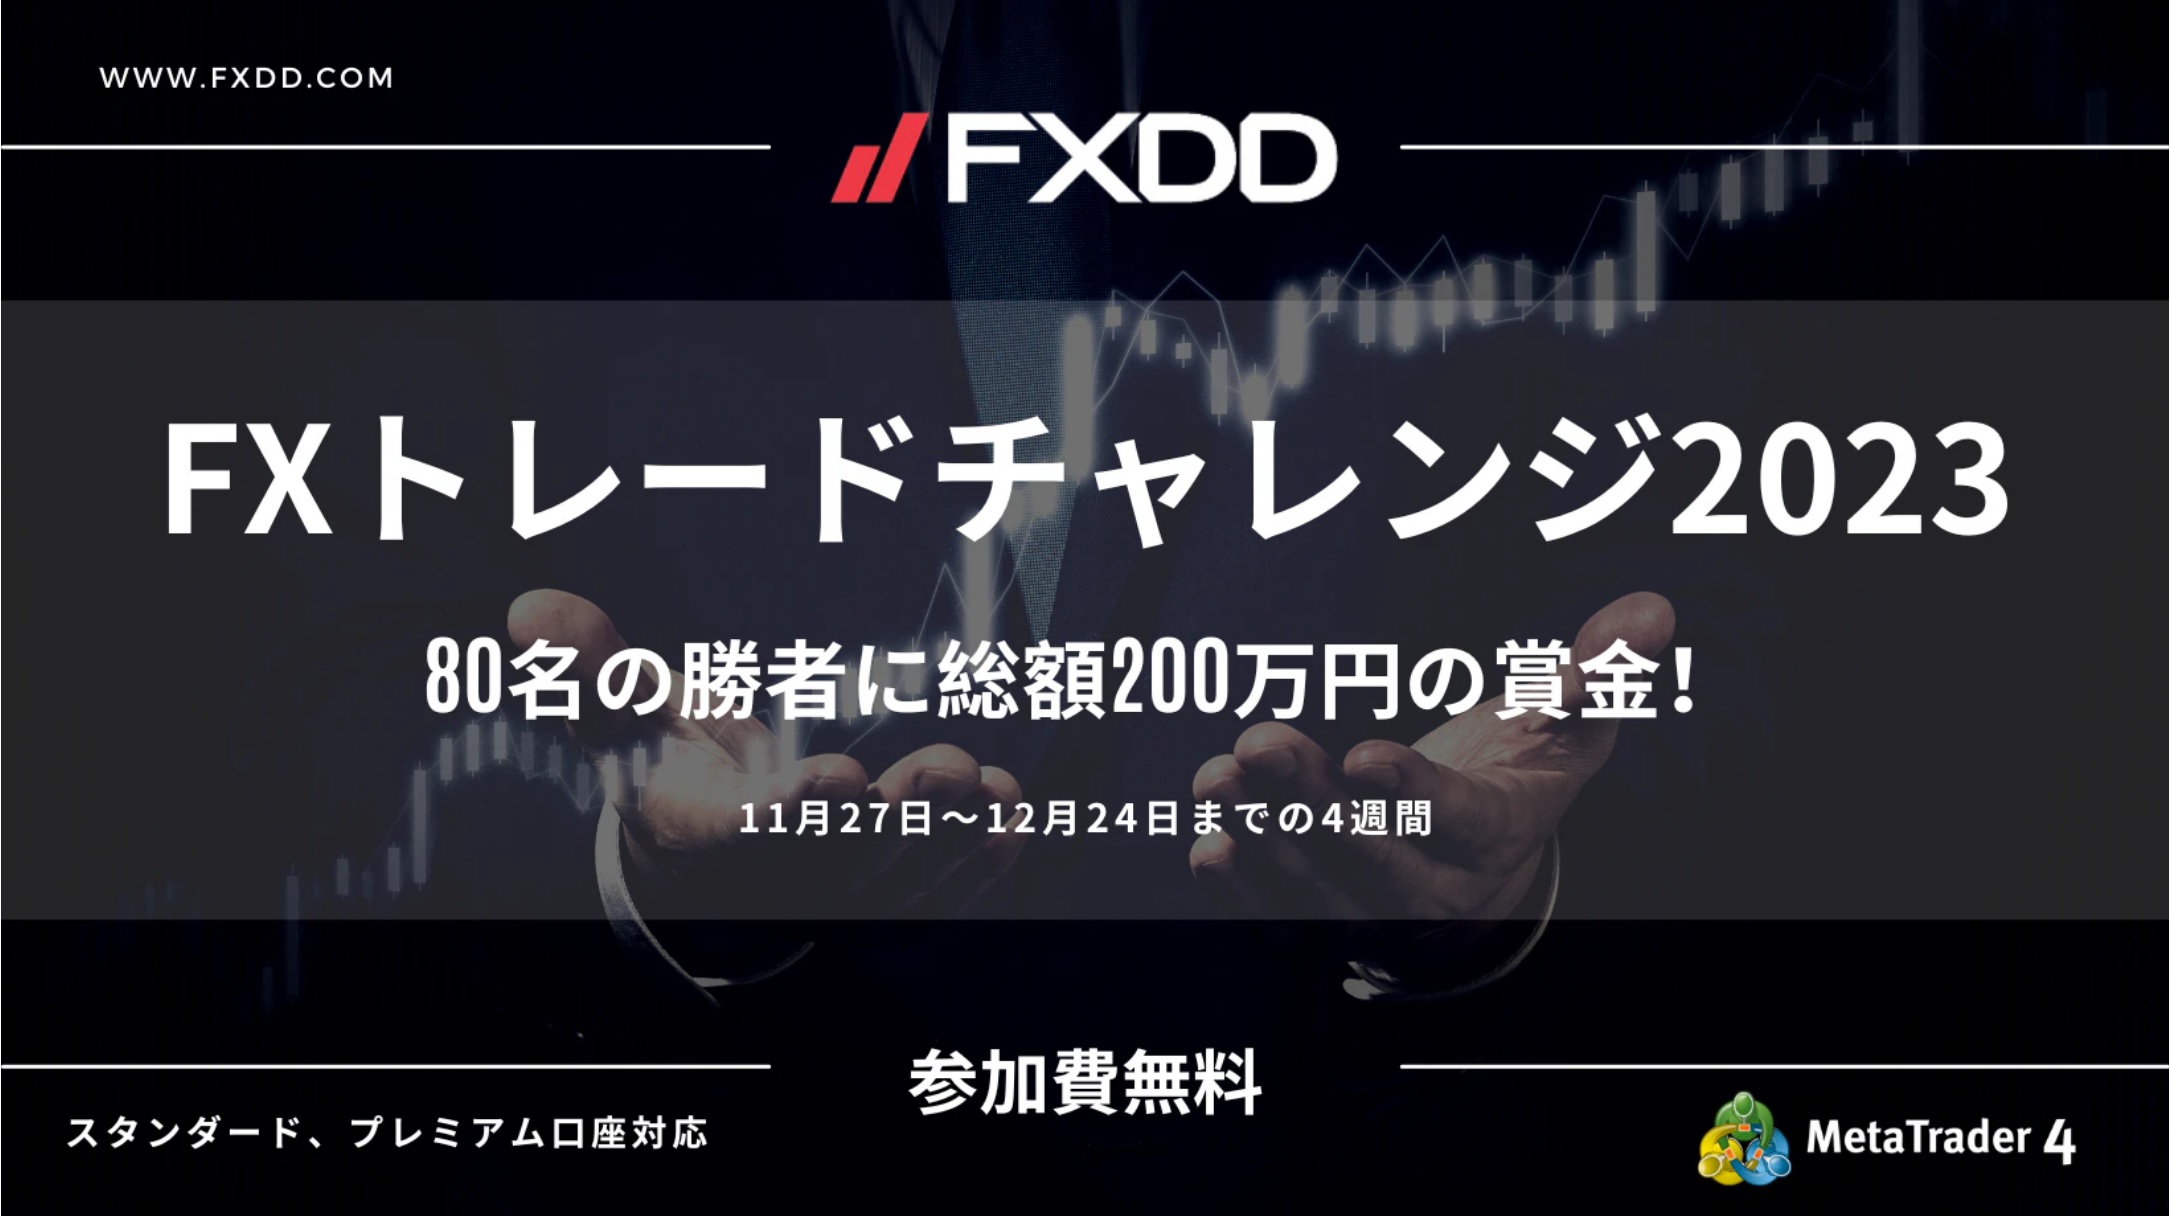 【FXDD】FXトレードチャレンジ2023